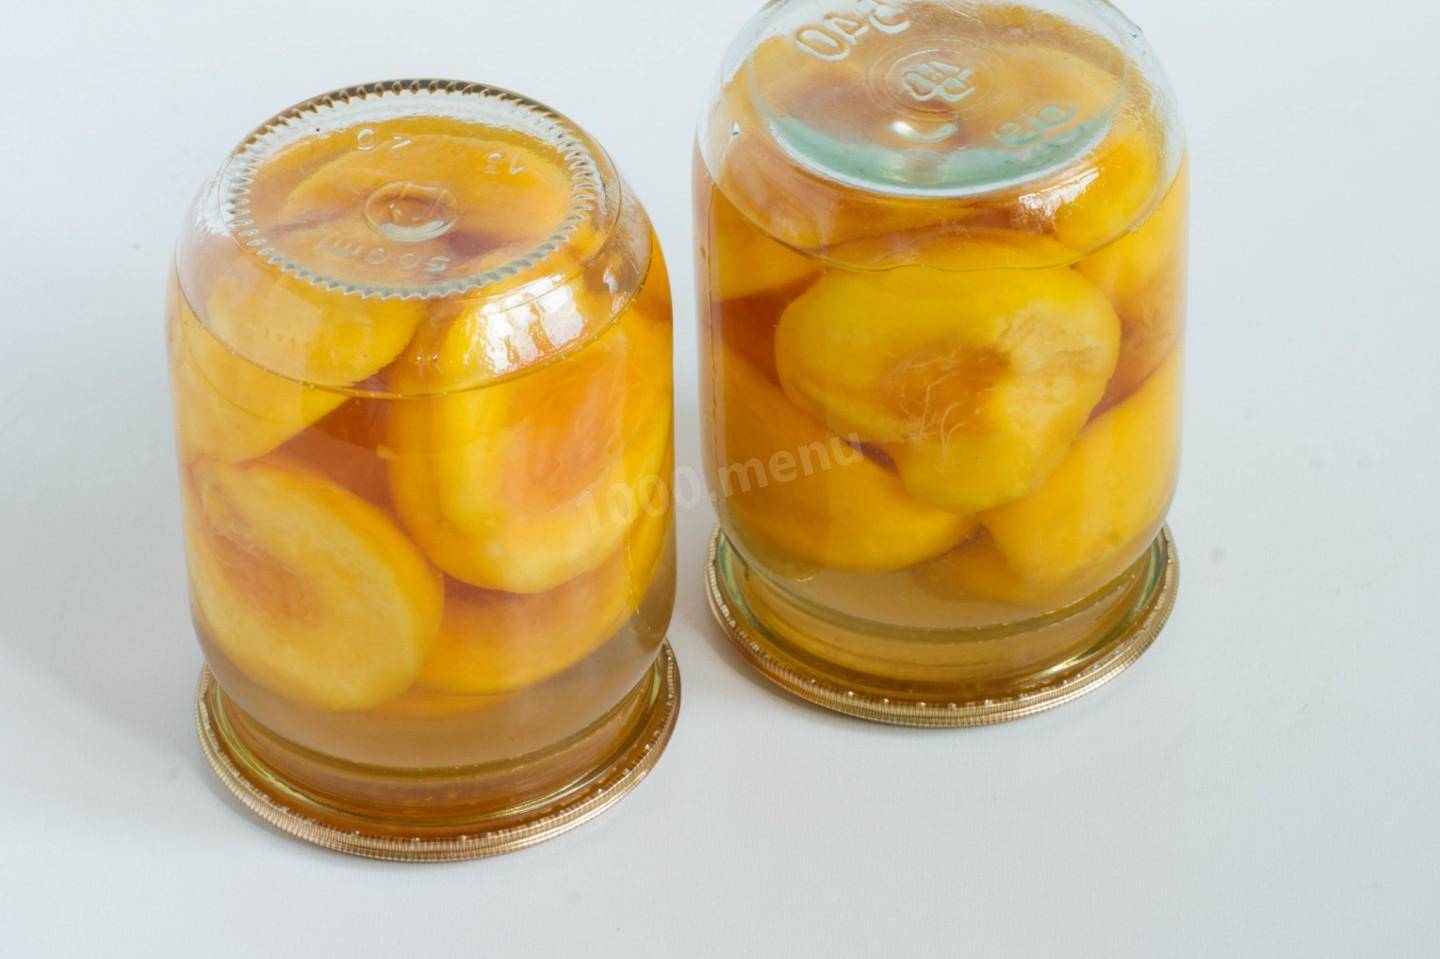 Консервированные персики на зиму пошаговый рецепт